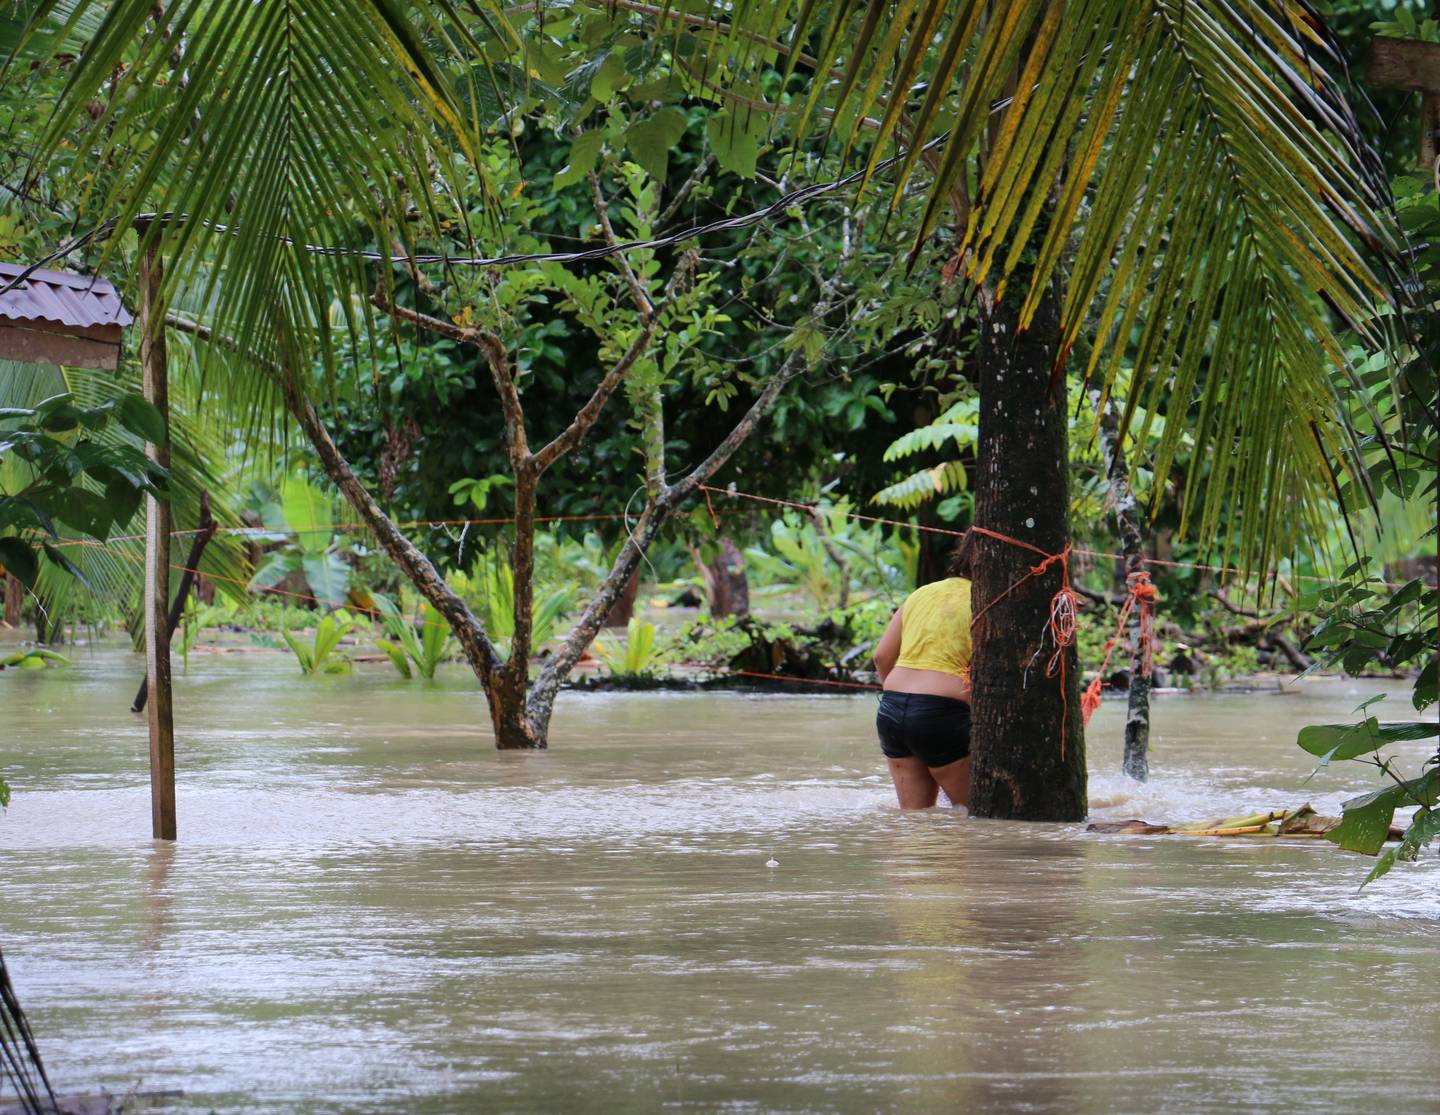 En Goshen de Matina y poblados cercanos el agua subió más de medio metro este jueves. Foto: Reiner Montero.